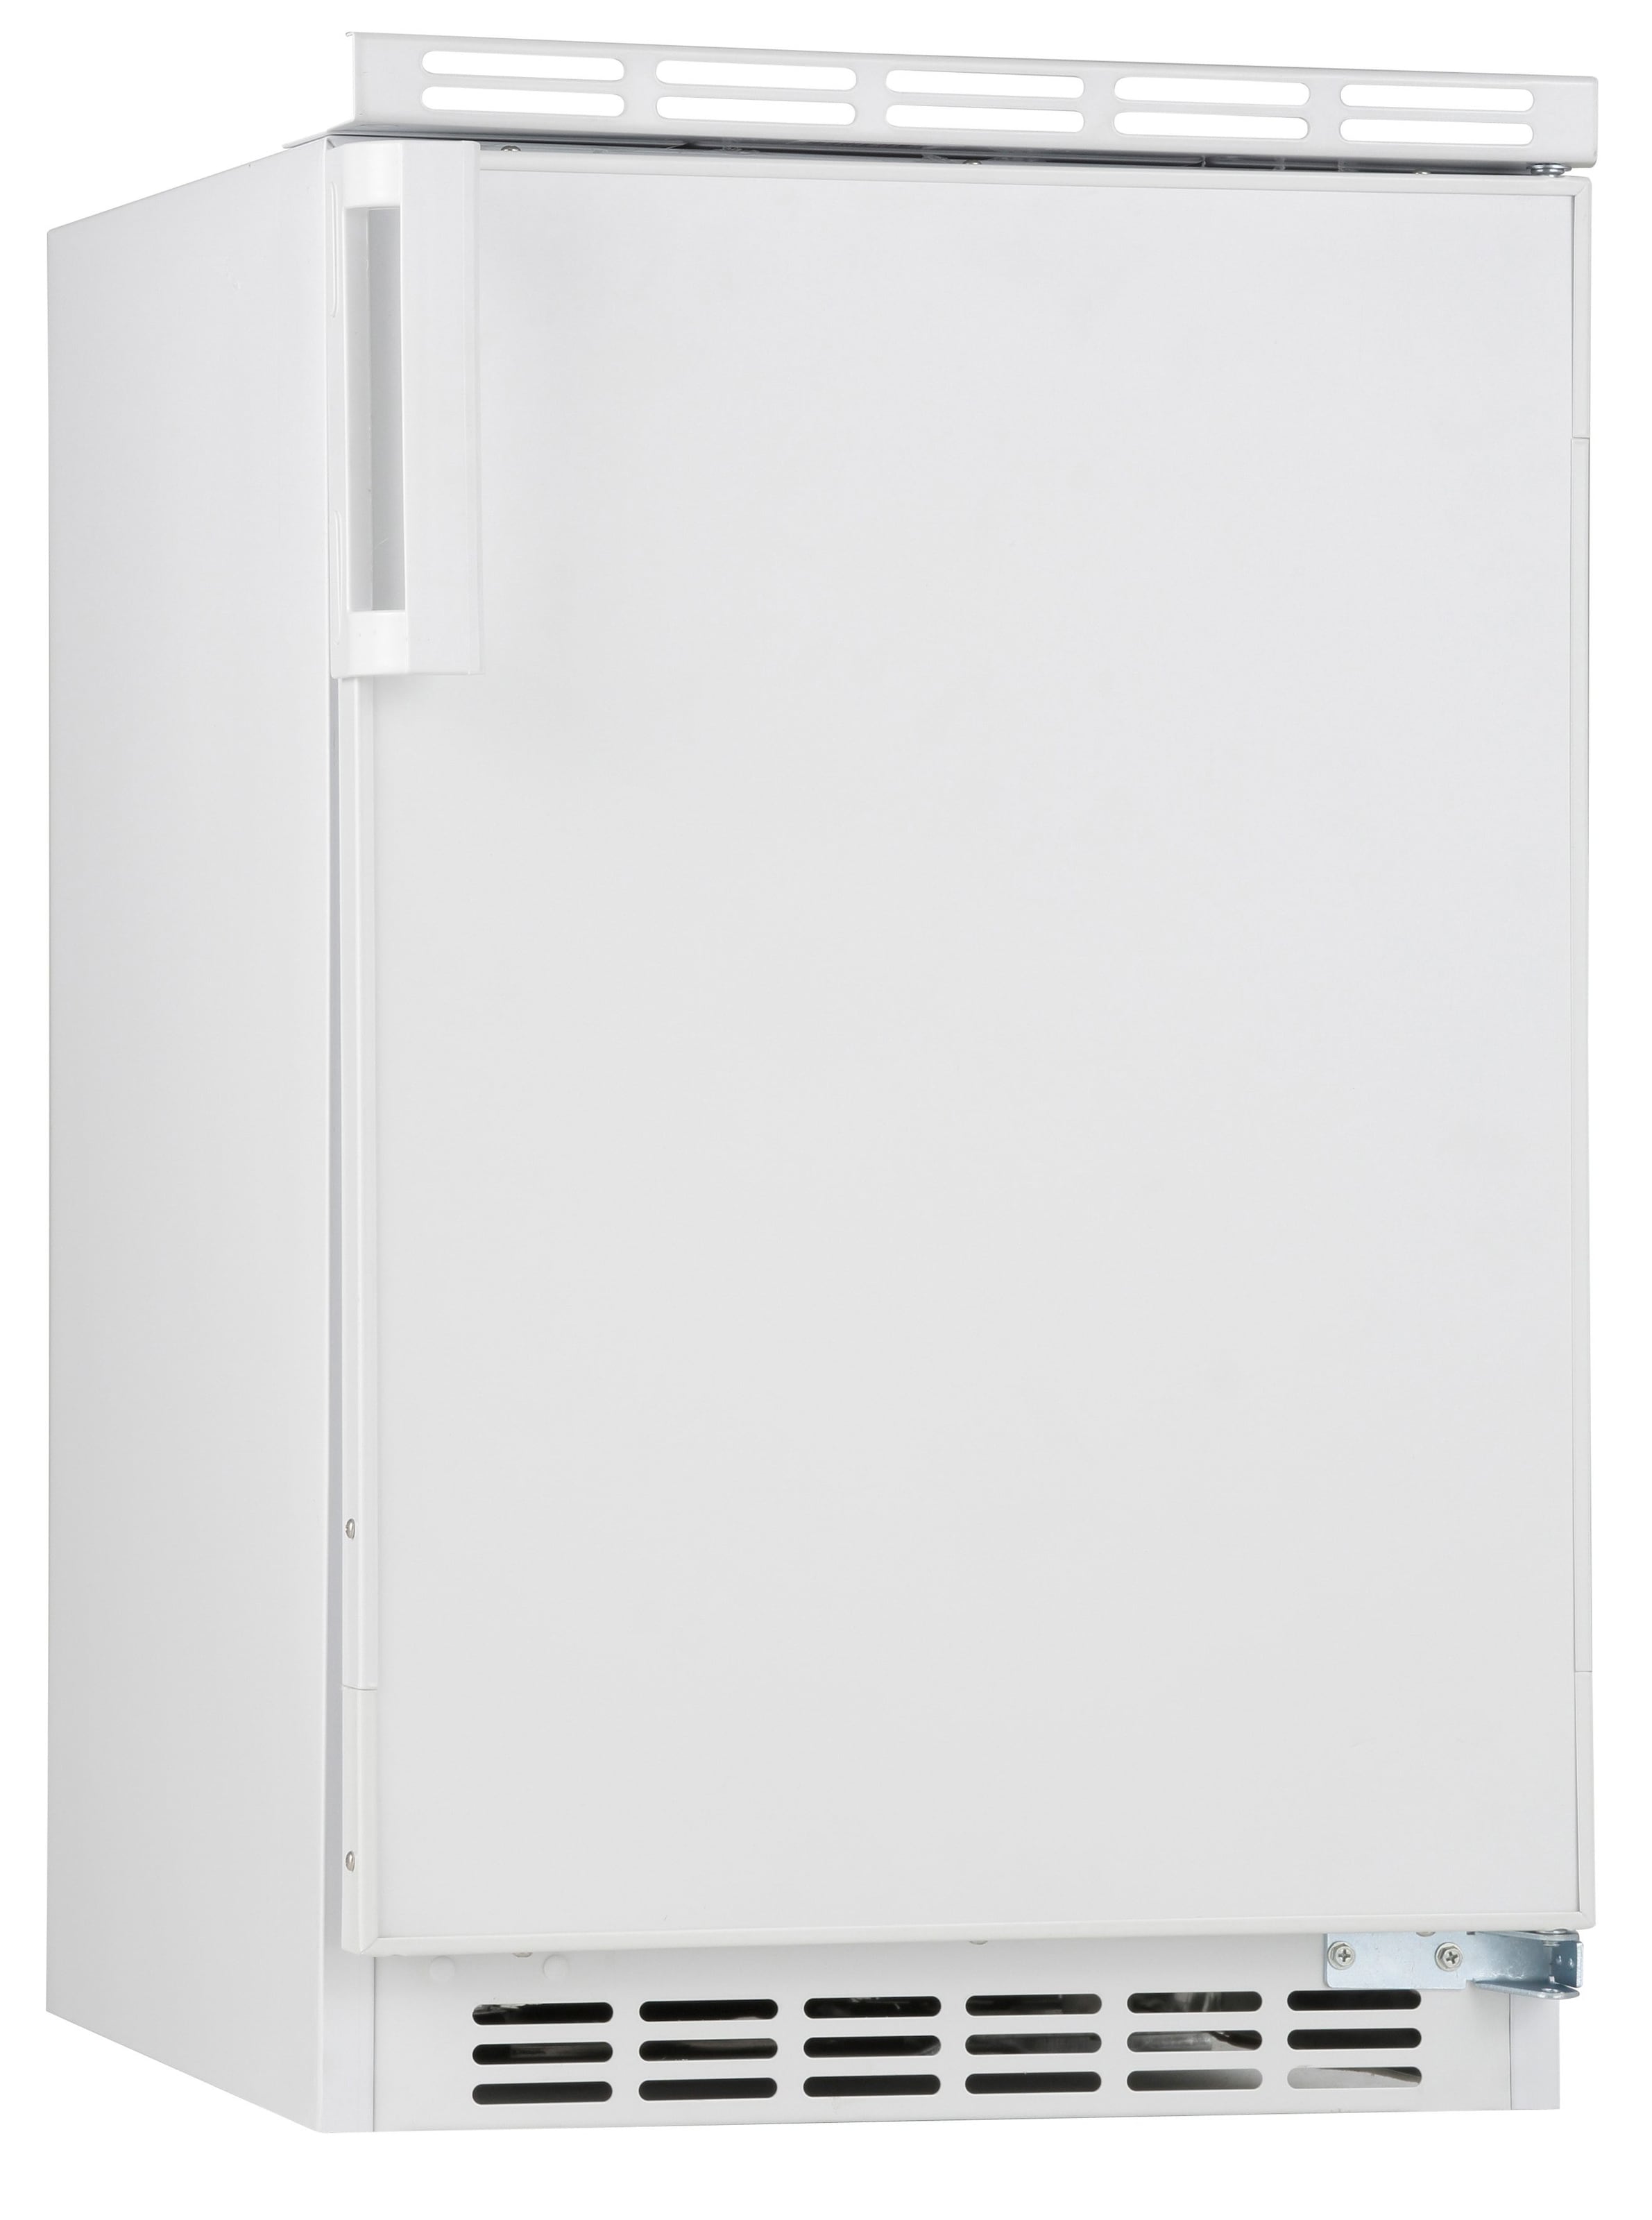 Amica Kühlschränke auf Rechnung bei OTTO